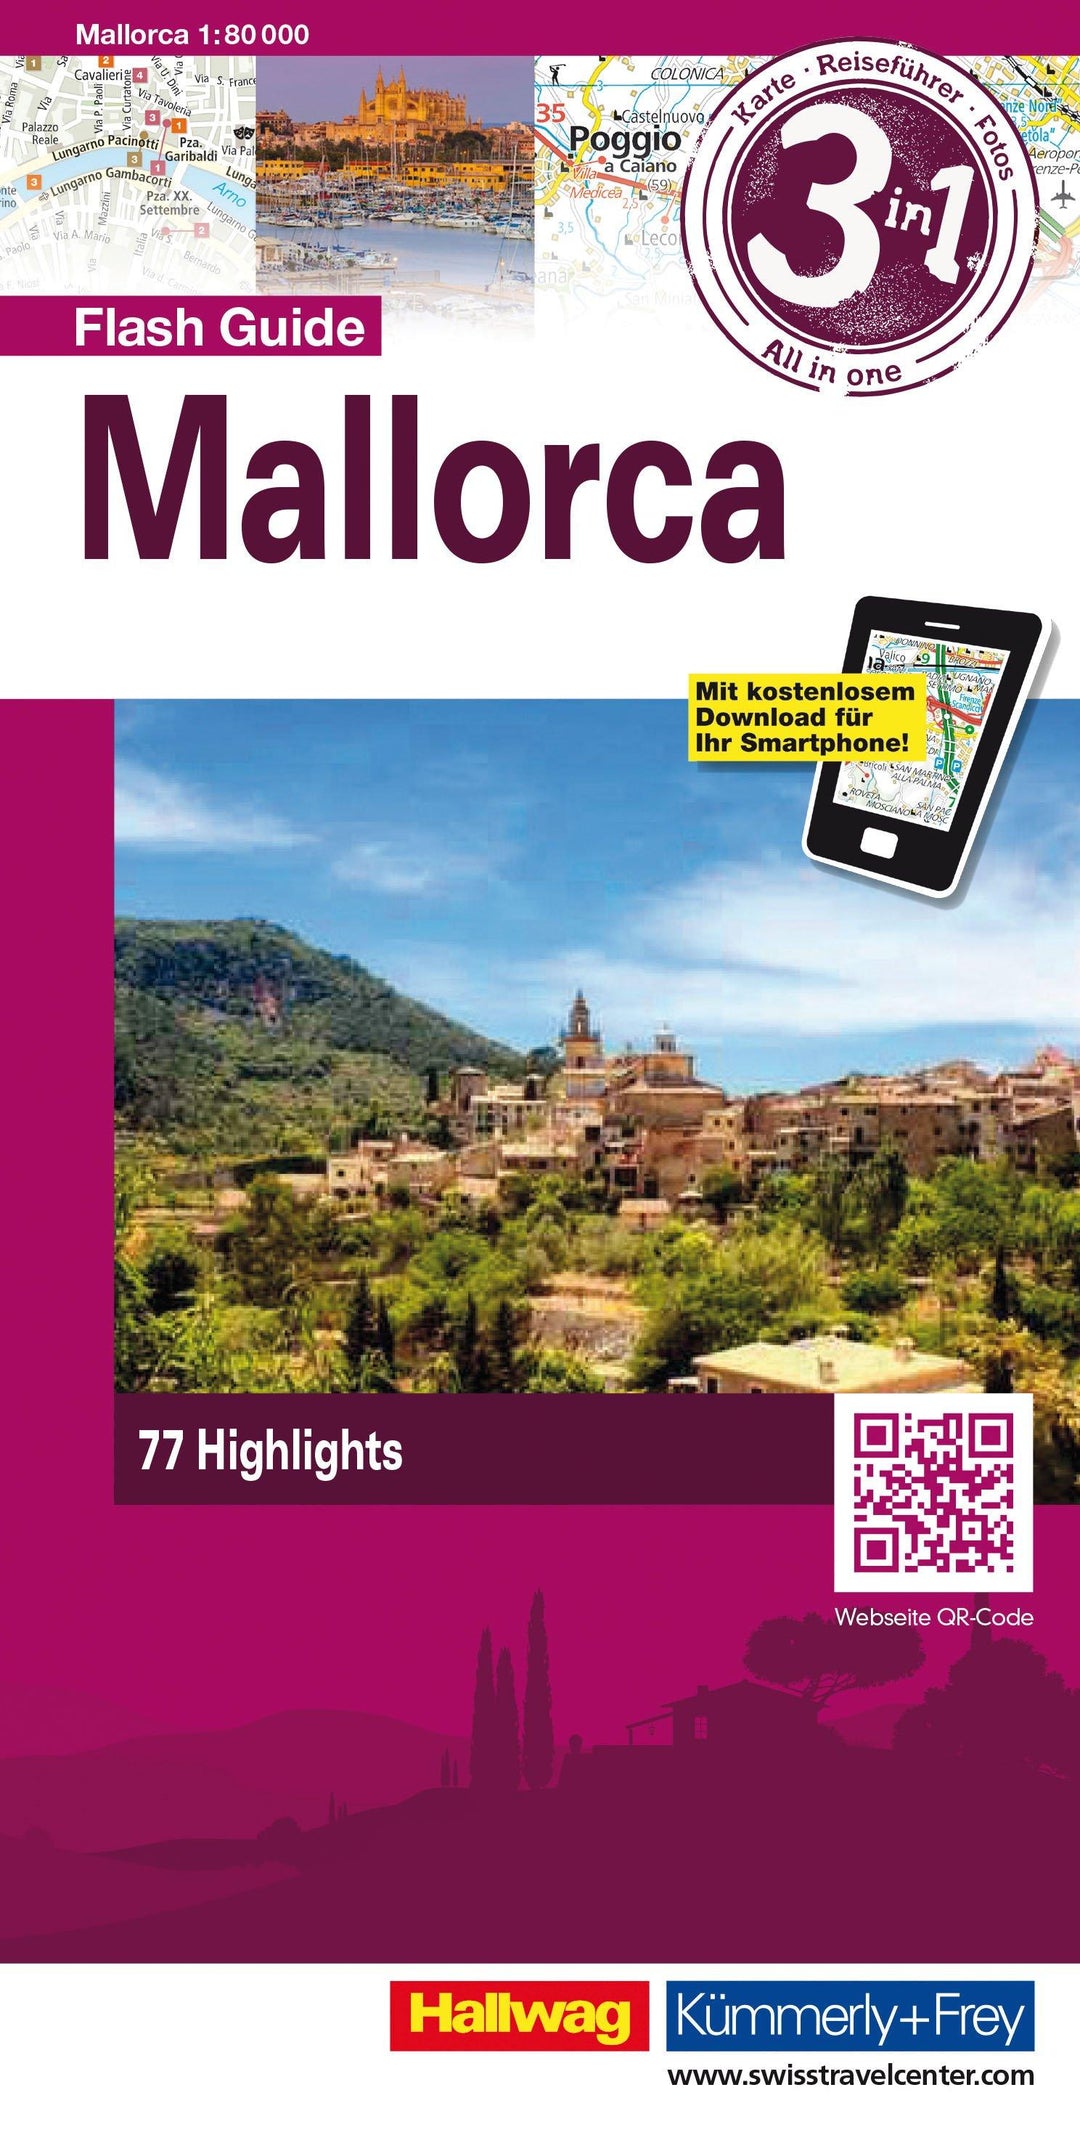 Carte de voyage - Majorque Flash Guide | Hallwag carte pliée Hallwag 